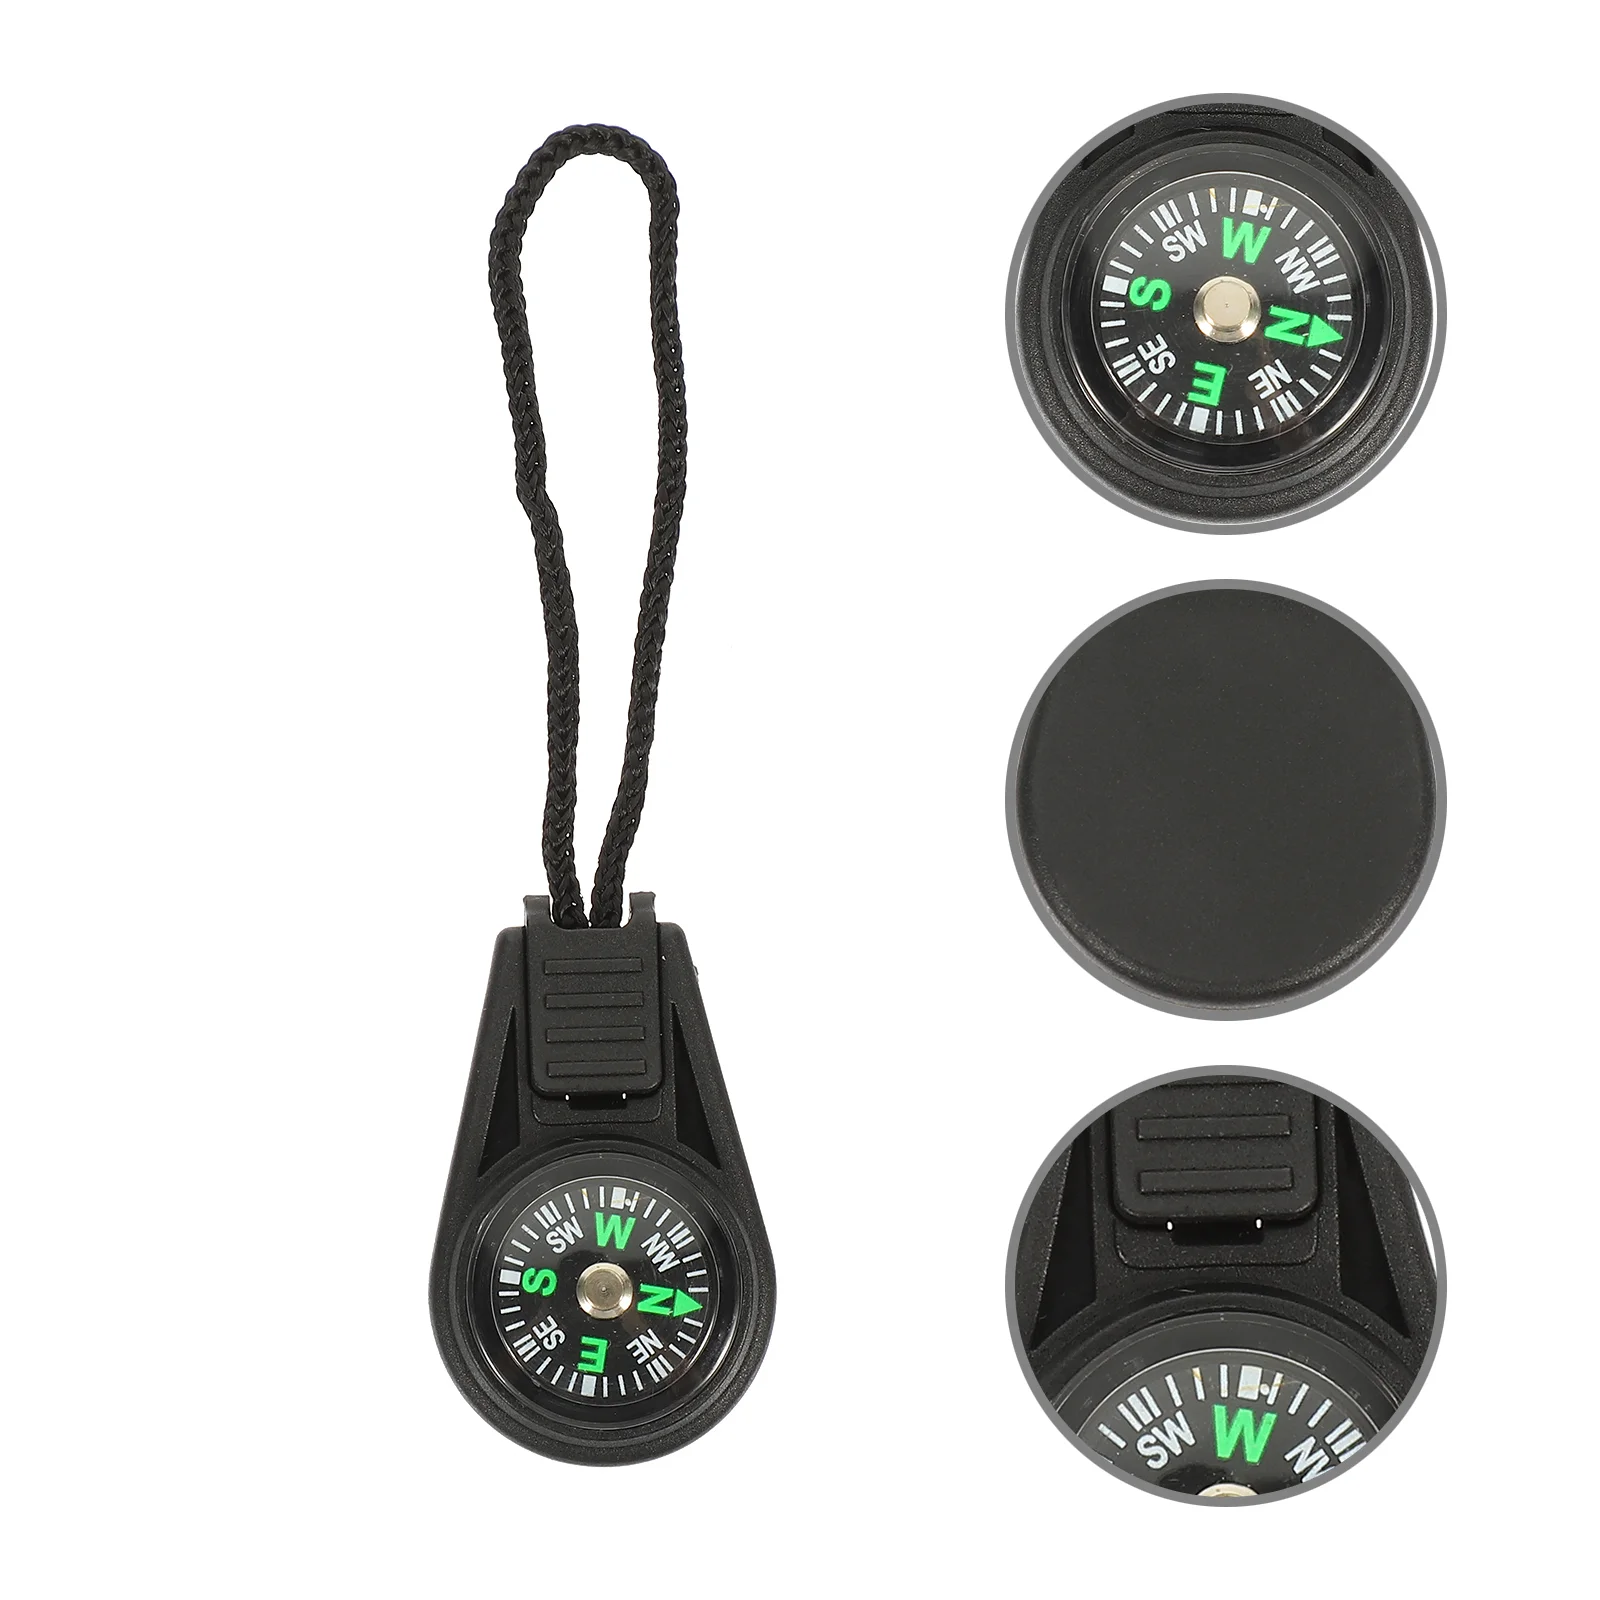 

10Pcs Outdoor Hiking Compasses Wear-resistant Survival Compasses Convenient Pocket Compasses